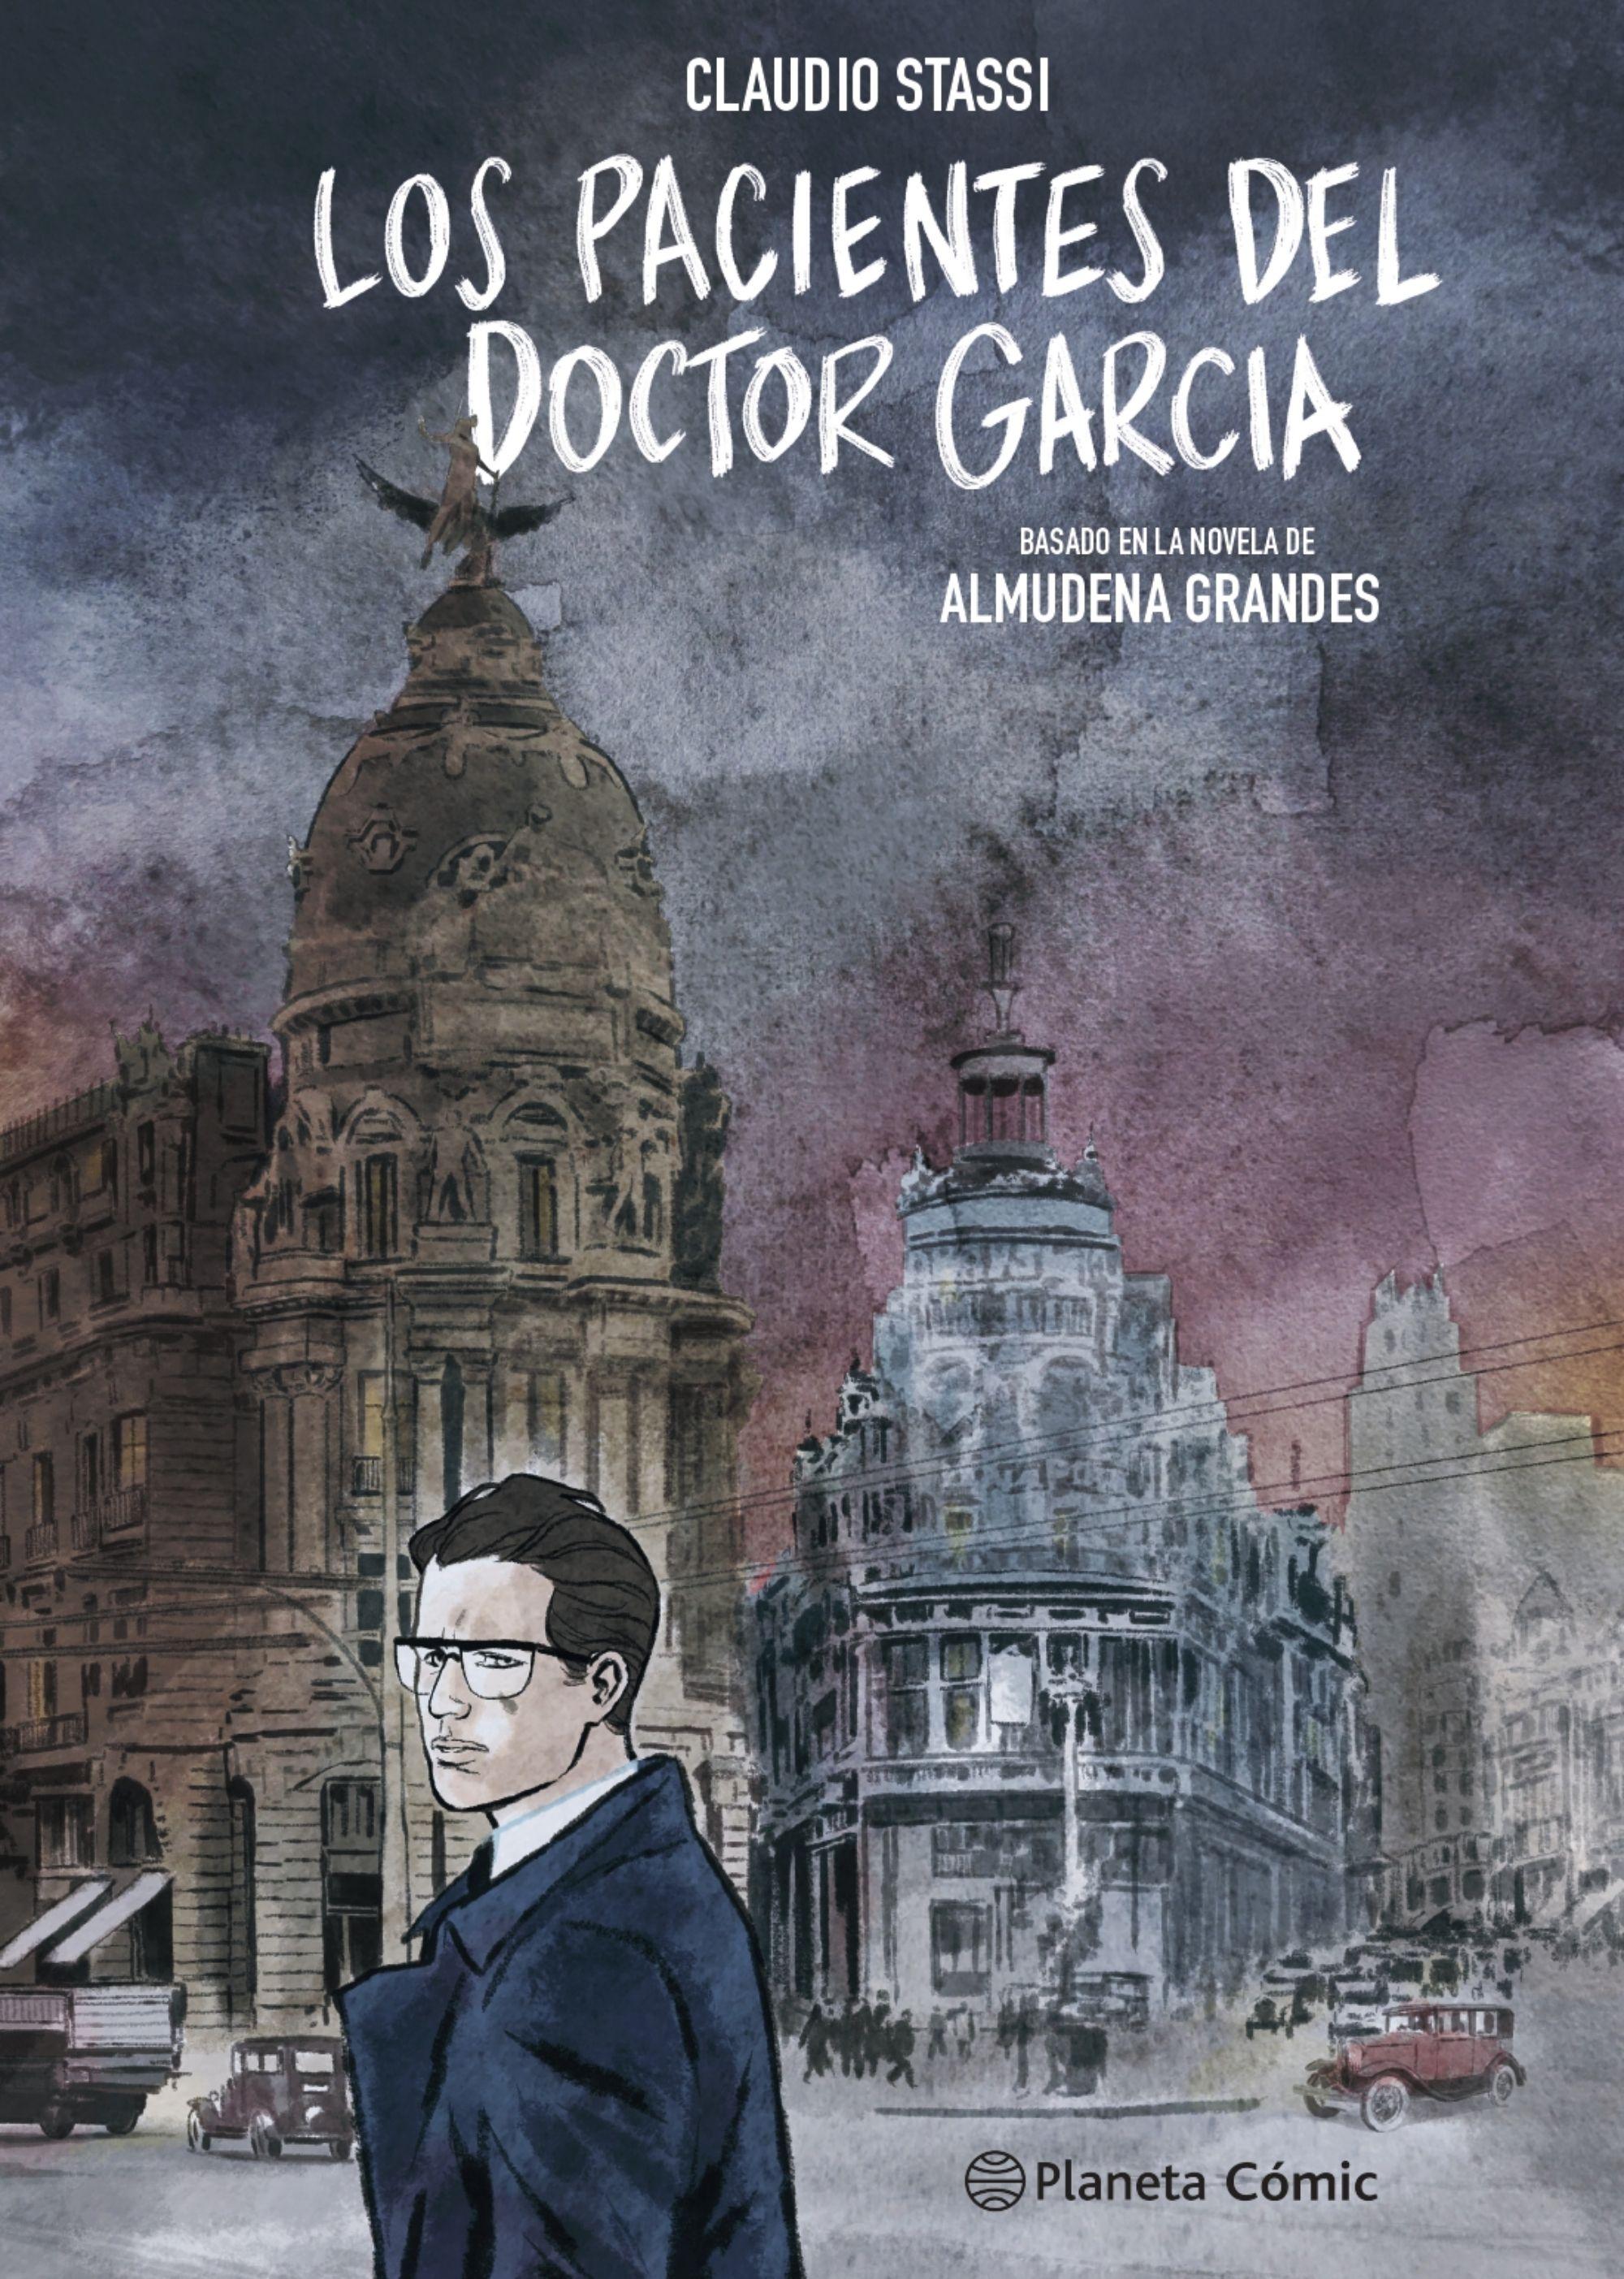 Los Pacientes del Doctor García (Novela Gráfica) "Basado en la Novela de Almudena Grandes"